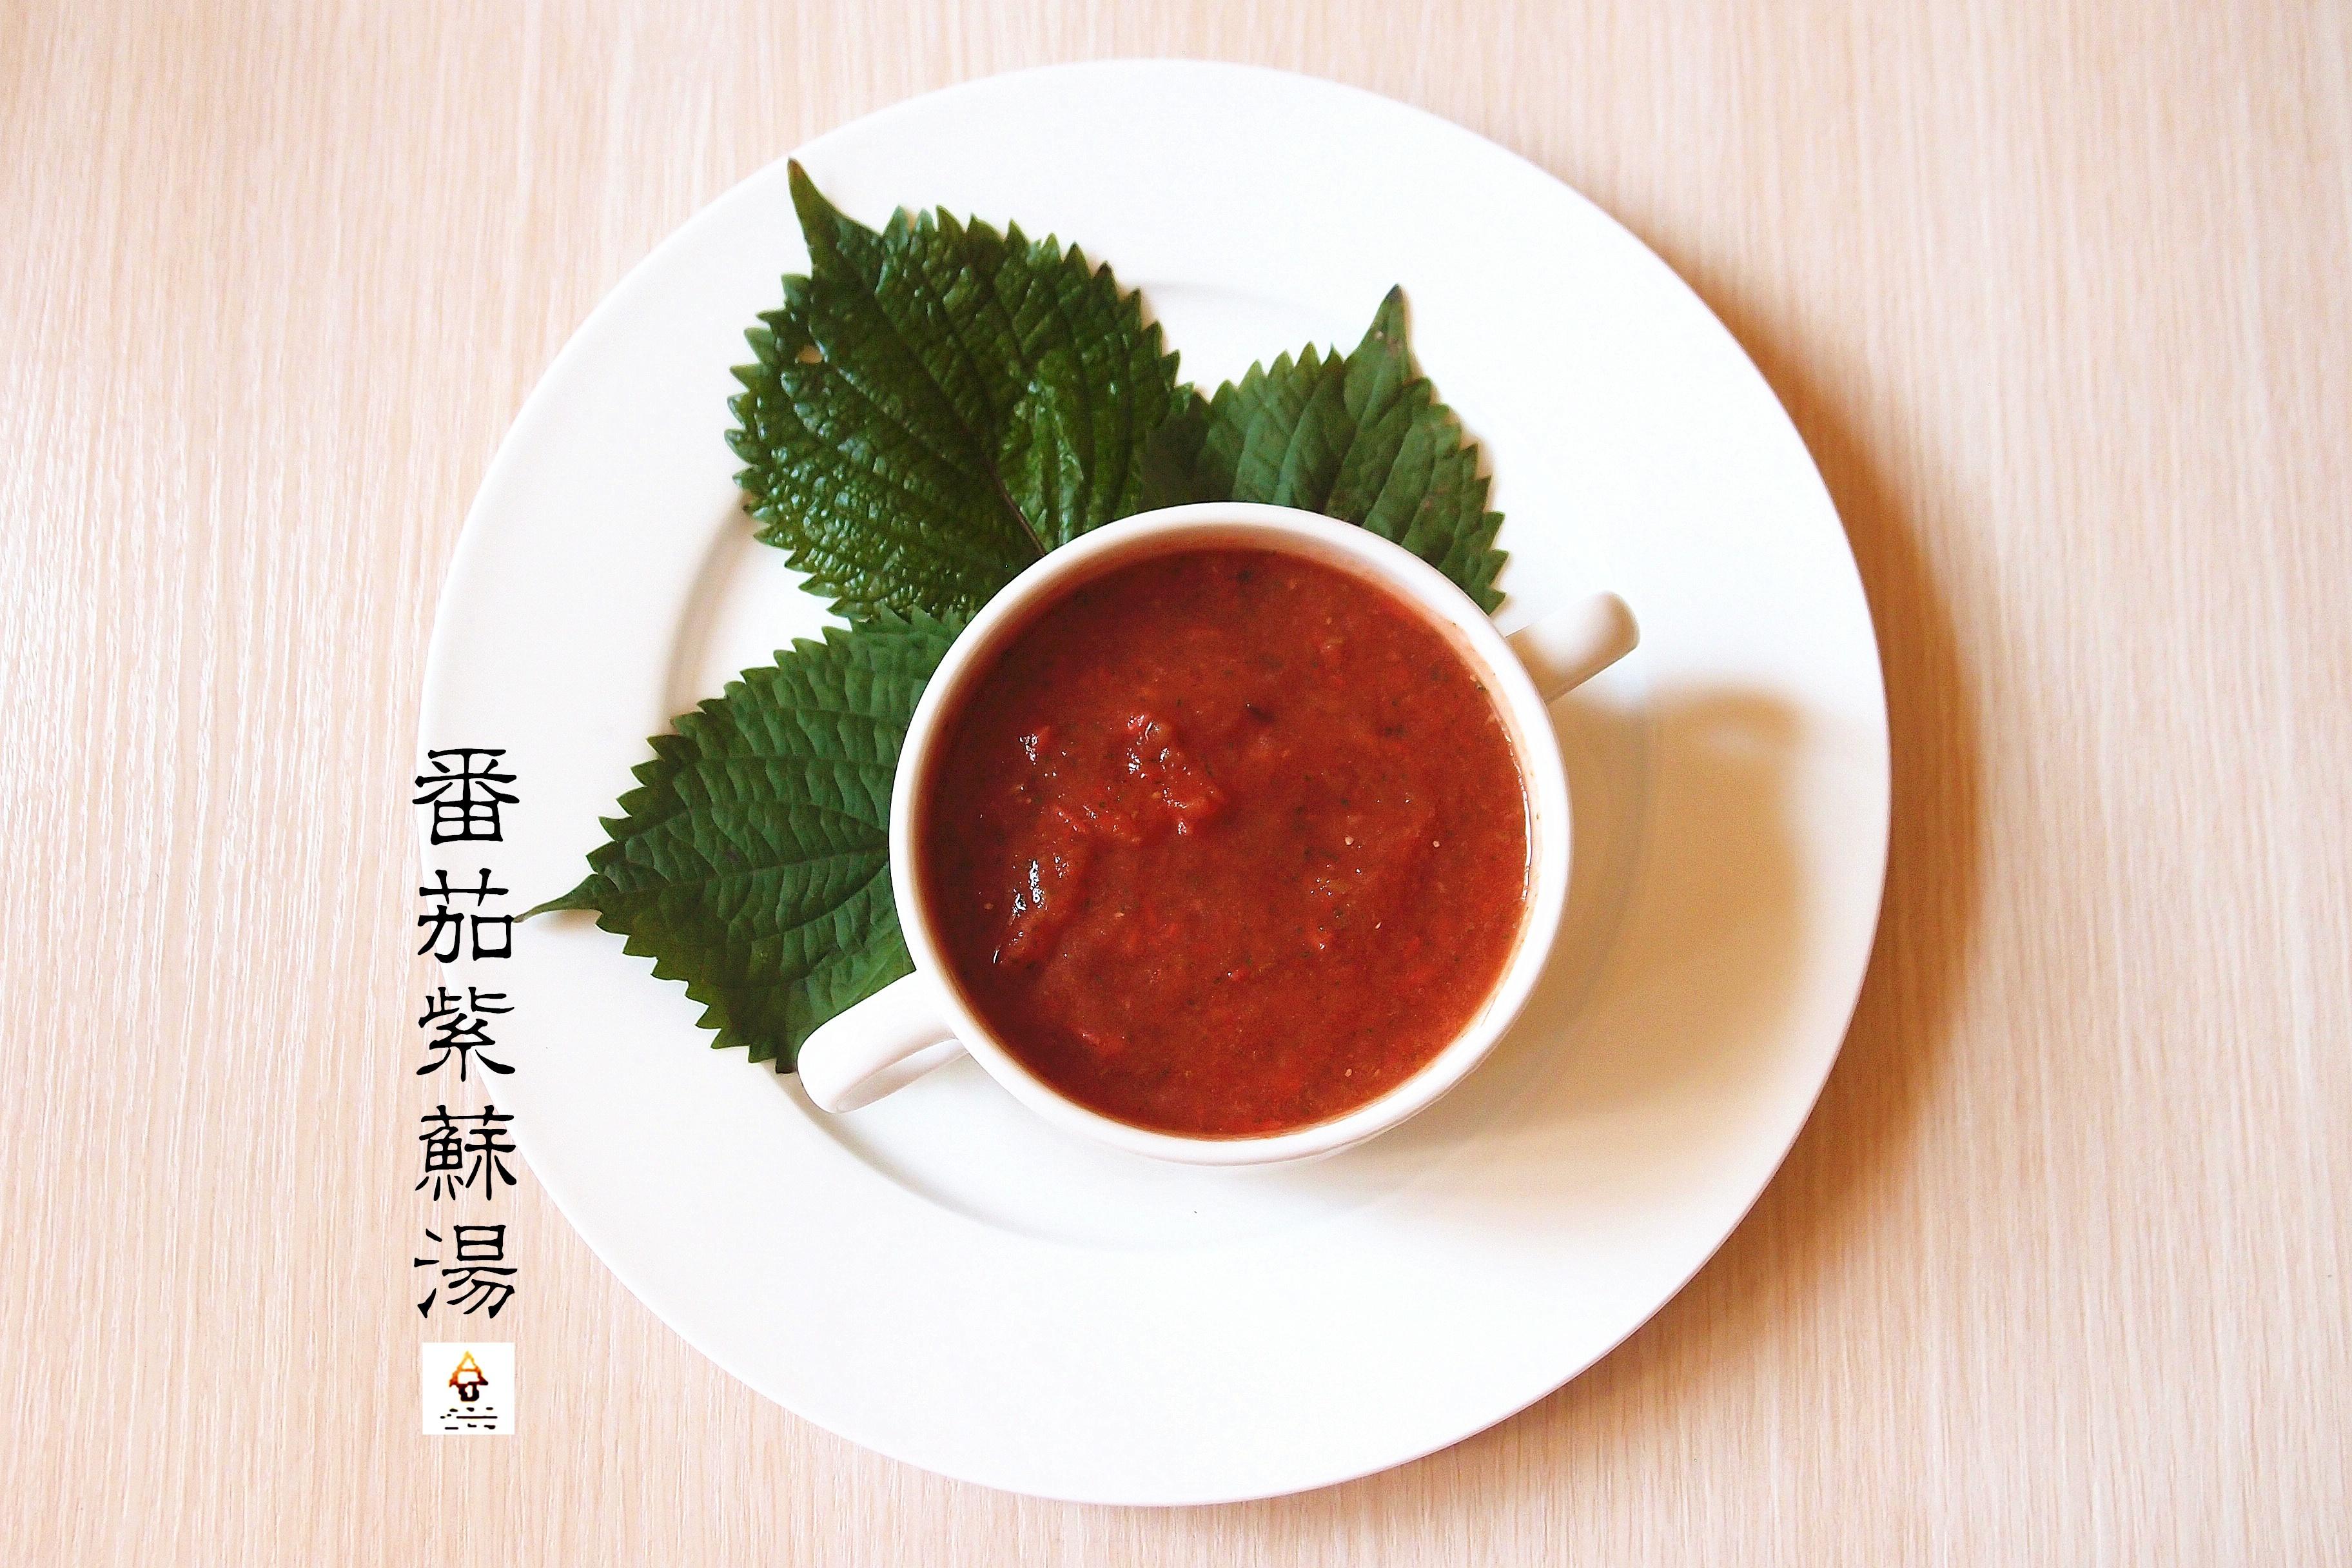 番茄紫苏汤 (Tomato and Perilla Leaf Soup)的做法